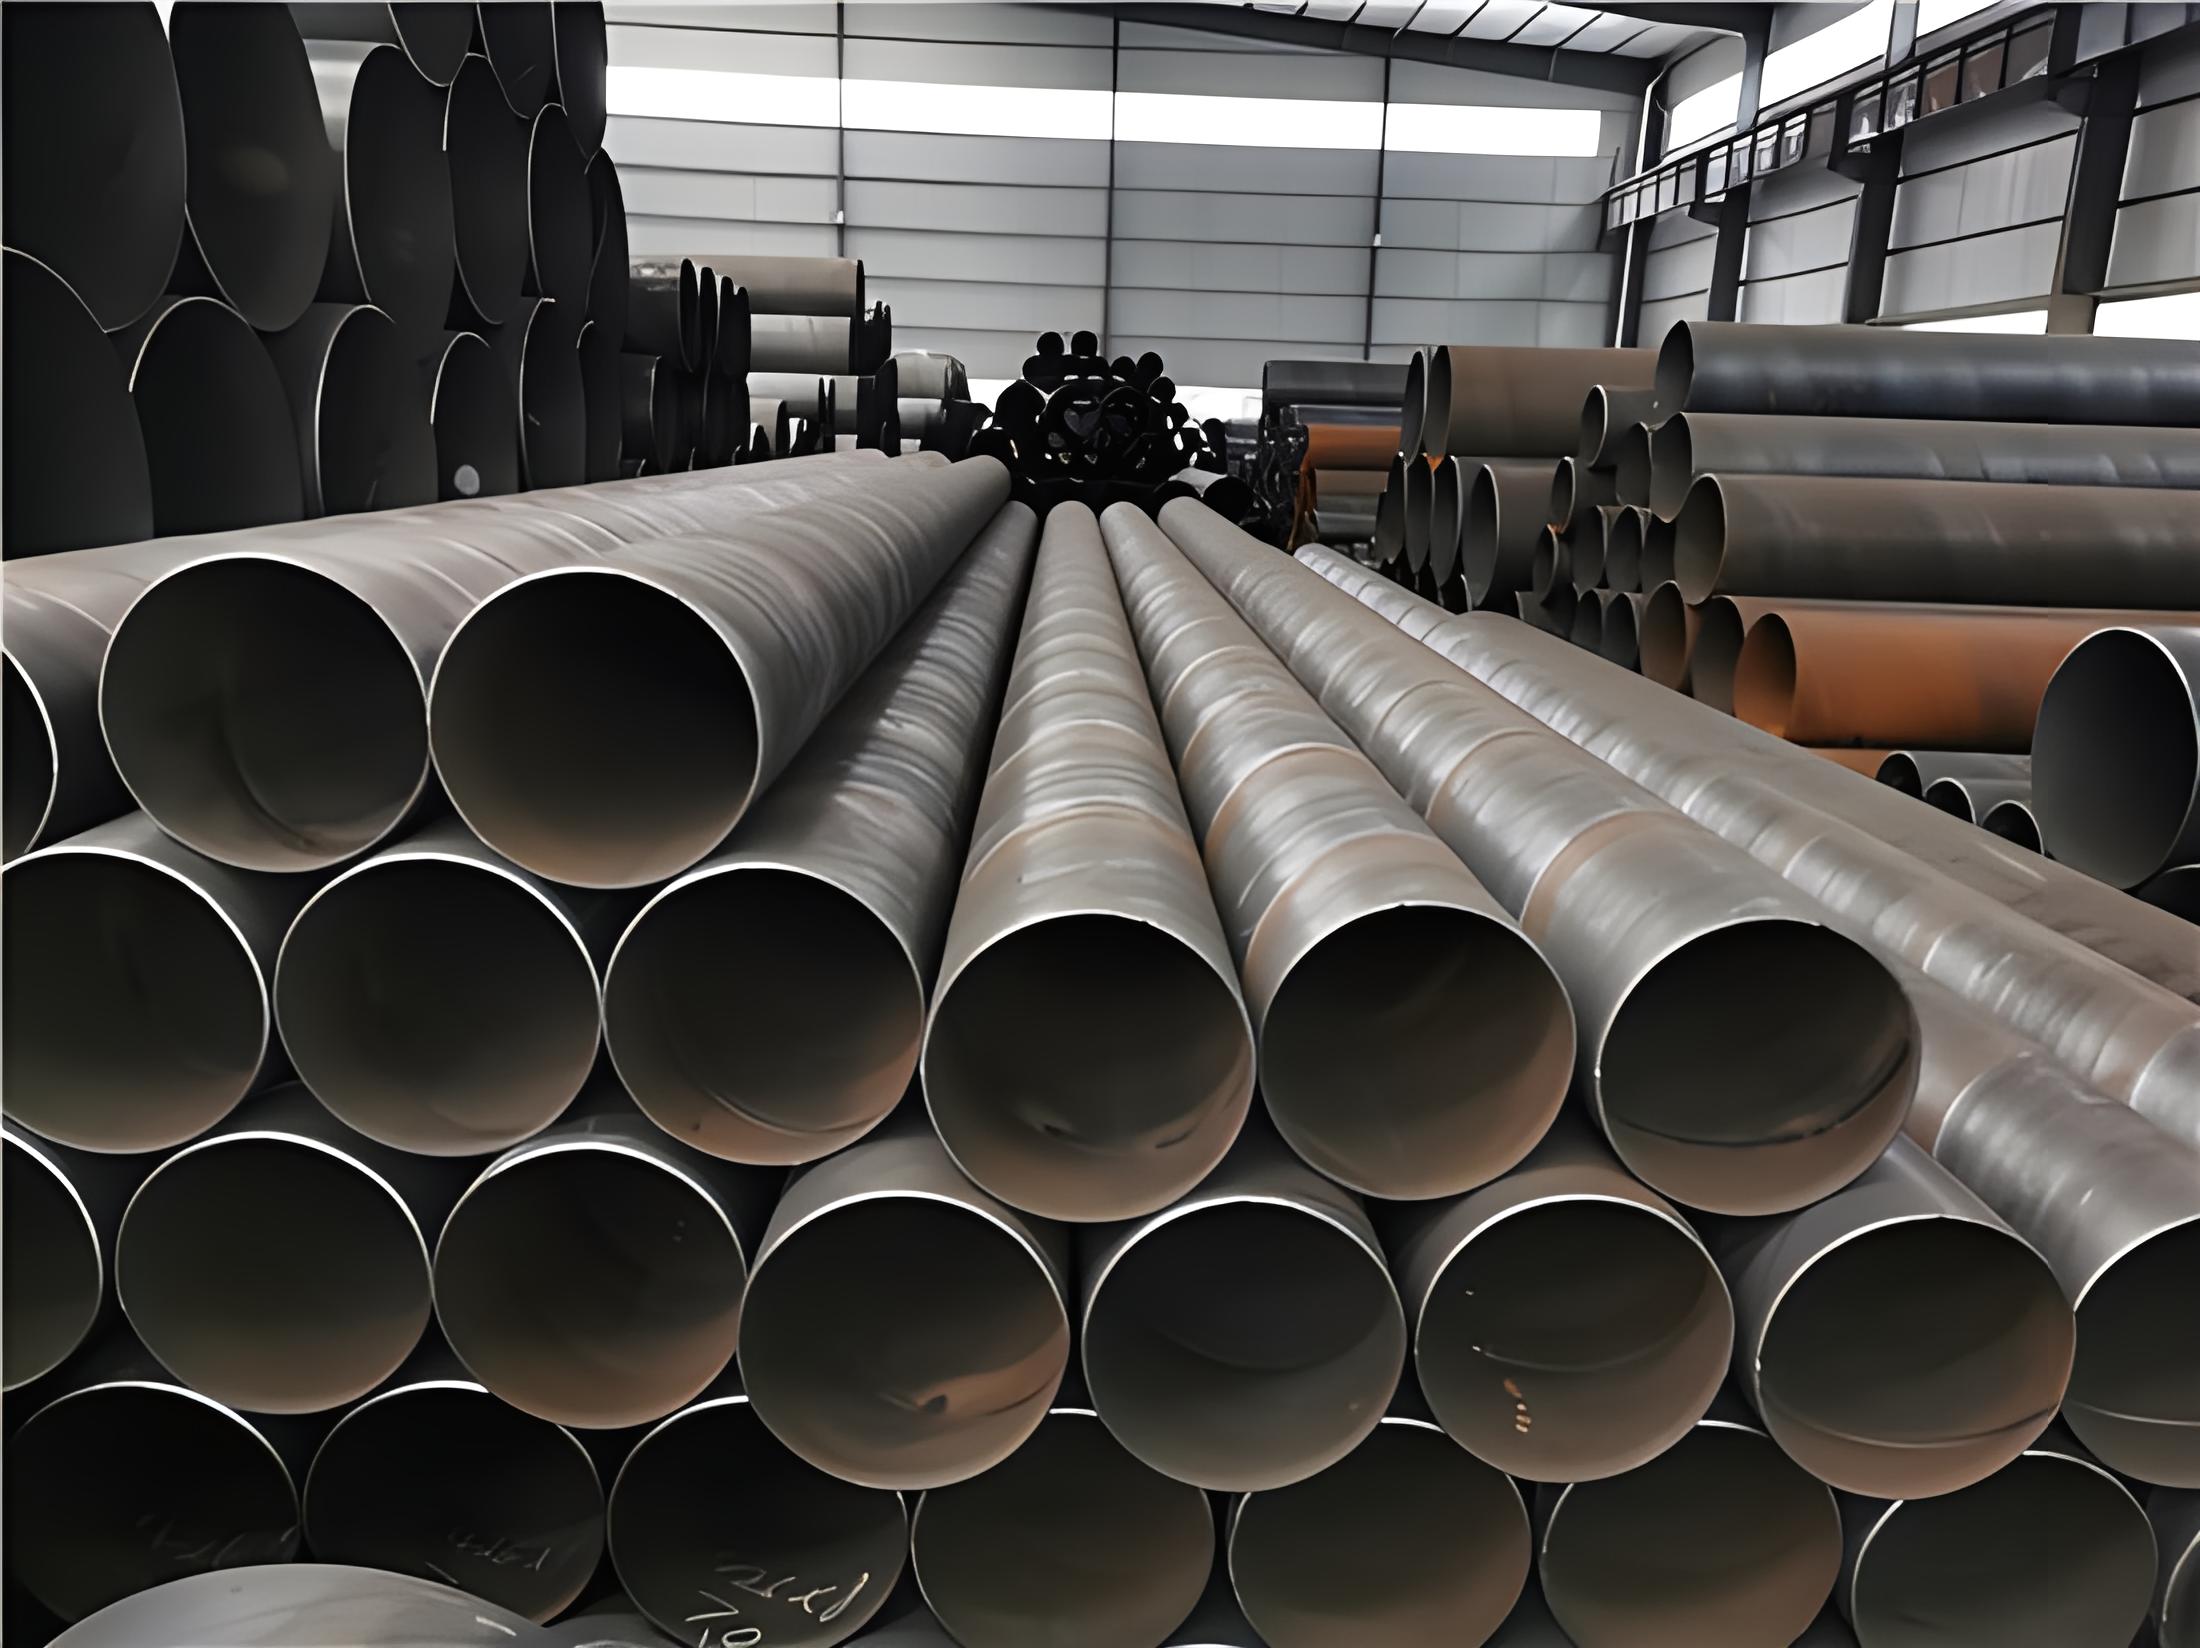 海南藏族螺旋钢管现代工业建设的坚实基石